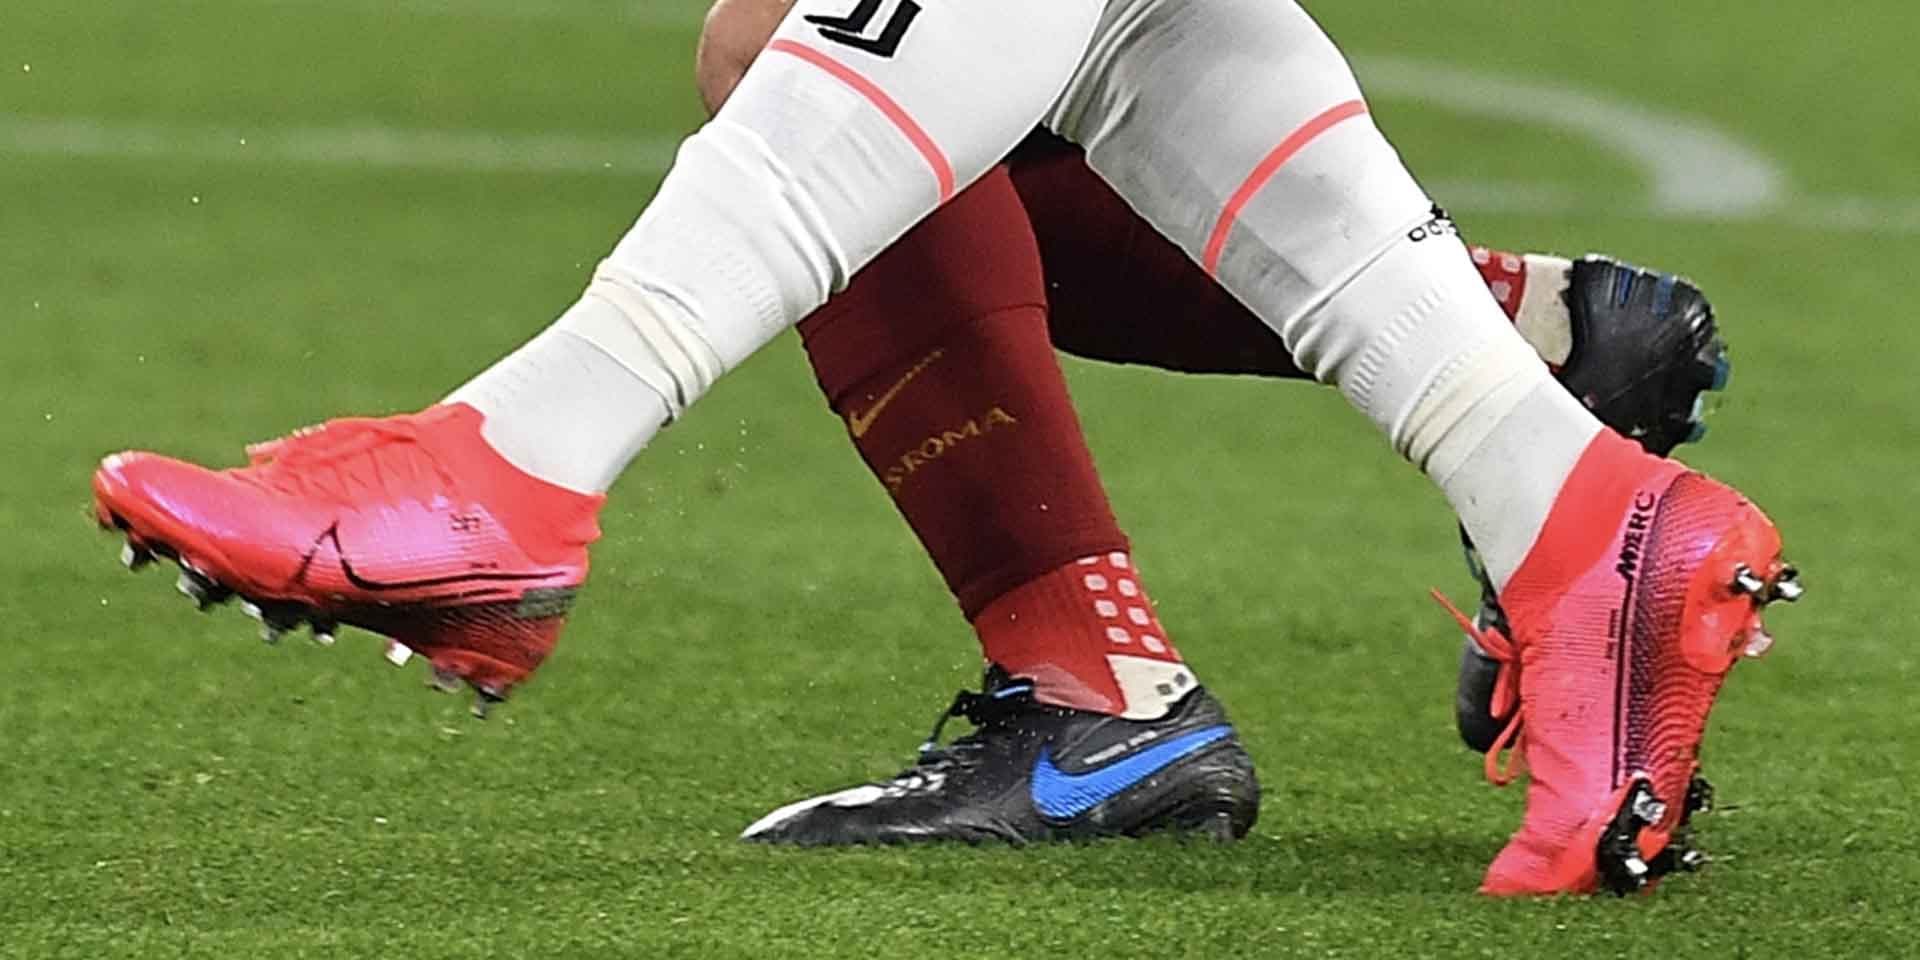 Giày đá bóng chính hãng của các cầu thủ chuyên nghiệp thường có da khác mỏng